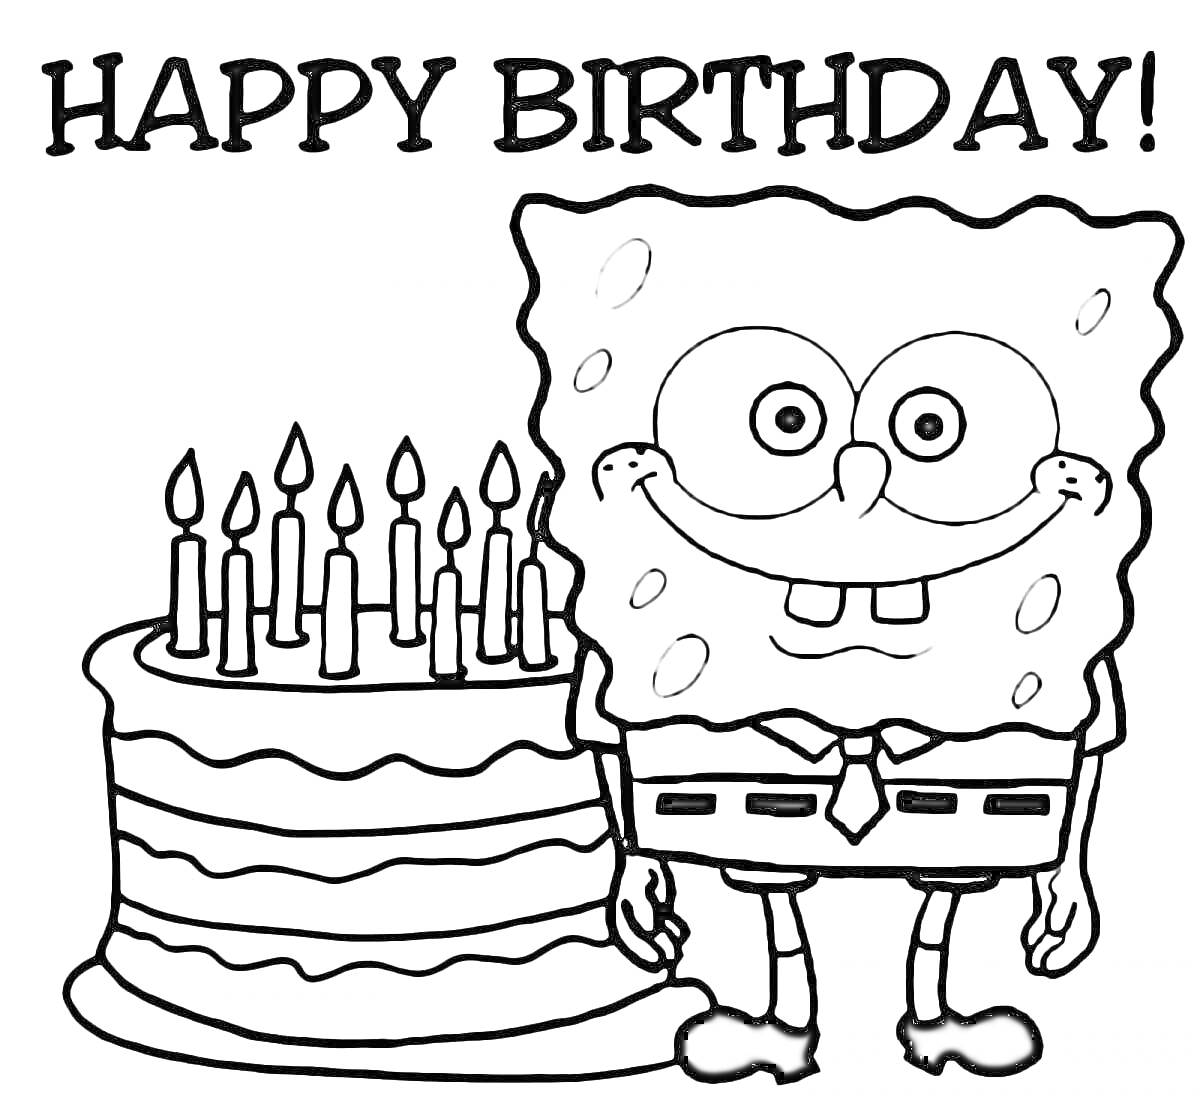 Раскраска фигурка Спанч Боба с галстуком, торт с 10 свечами, надпись 